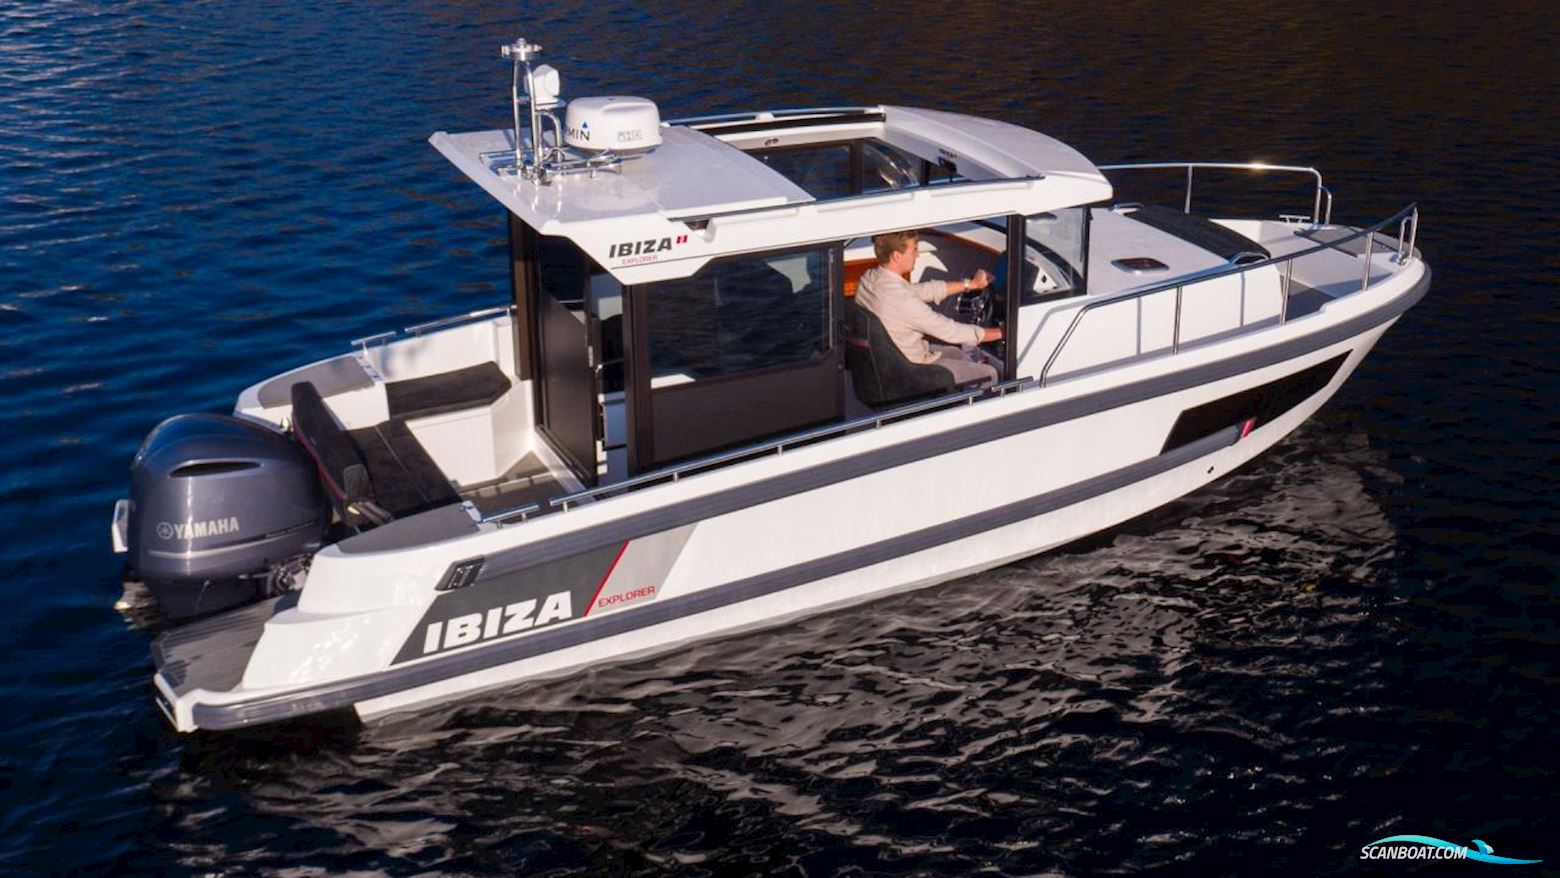 Ibiza 811 Explorer Motorbåt 2021, med Yamaha motor, Sverige